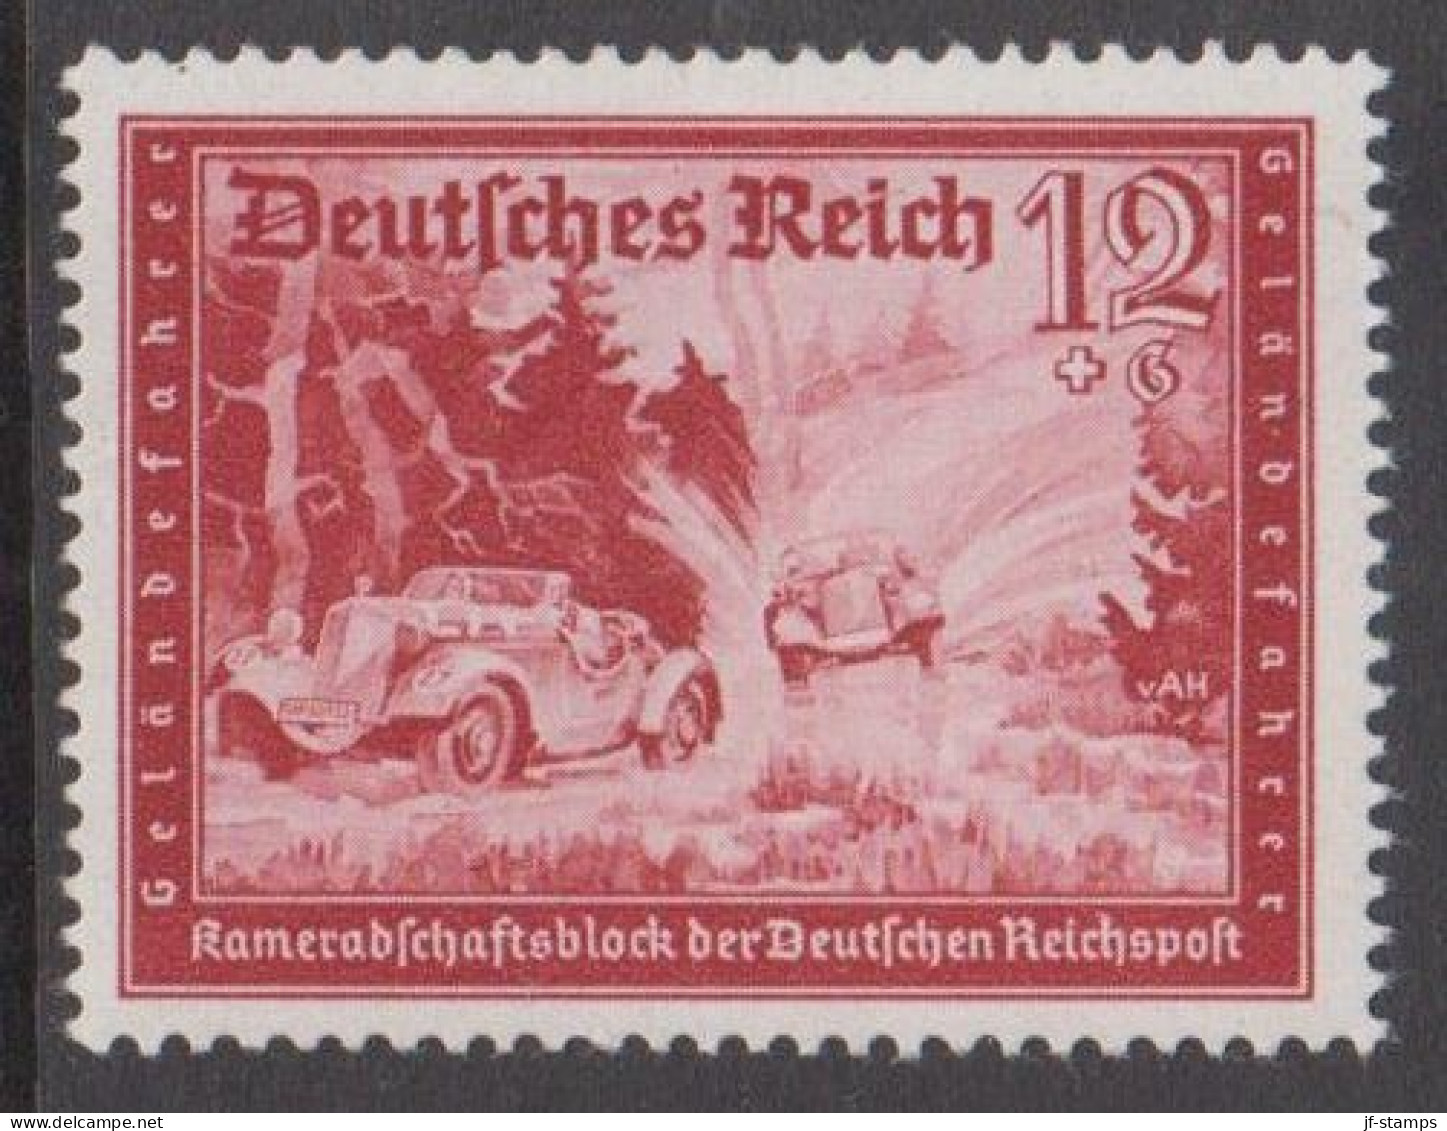 1939. DEUTSCHES REICH. Kameradschaftsblock Der Deutschen Reichspost 12+6 Pf Hinged. (Michel 708) - JF539169 - Ongebruikt